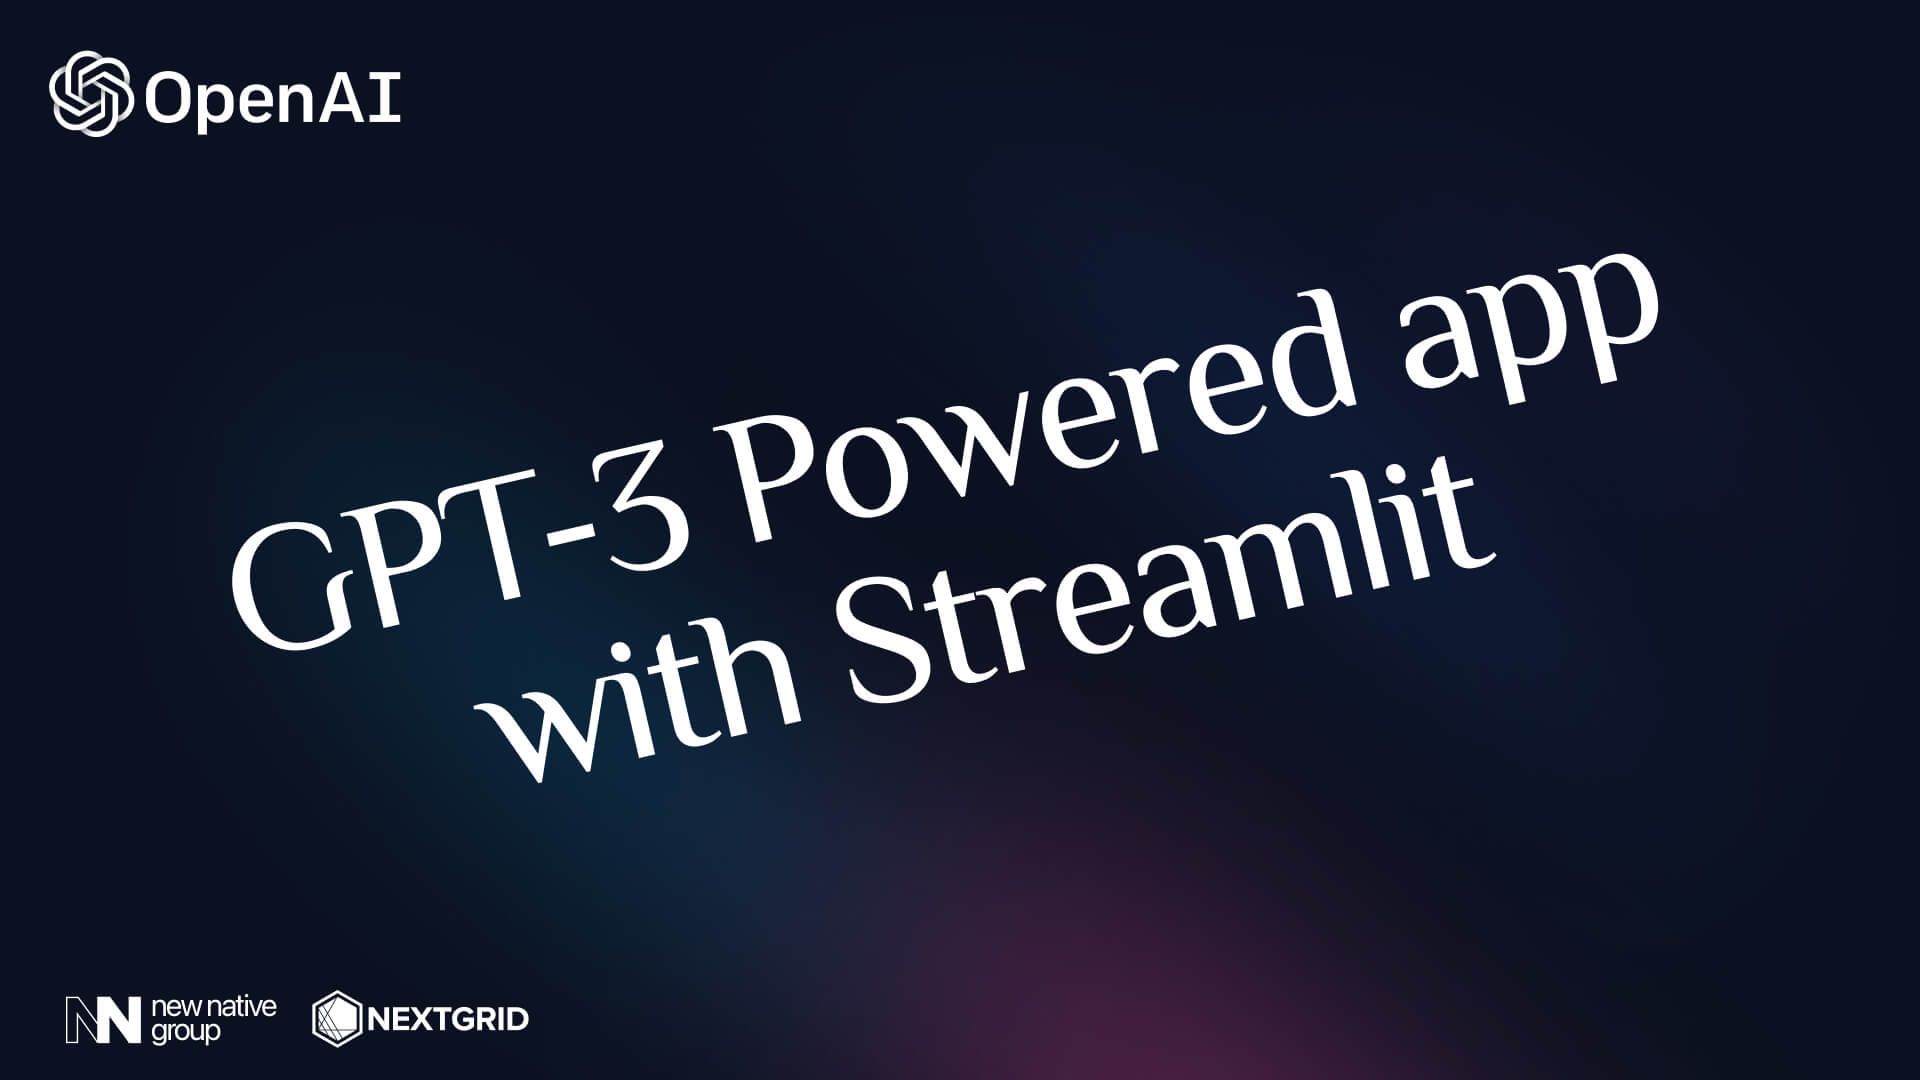 Tutorial de cómo usar GPT-3: Cree su propia aplicación GPT-3 Powered usando streamlit